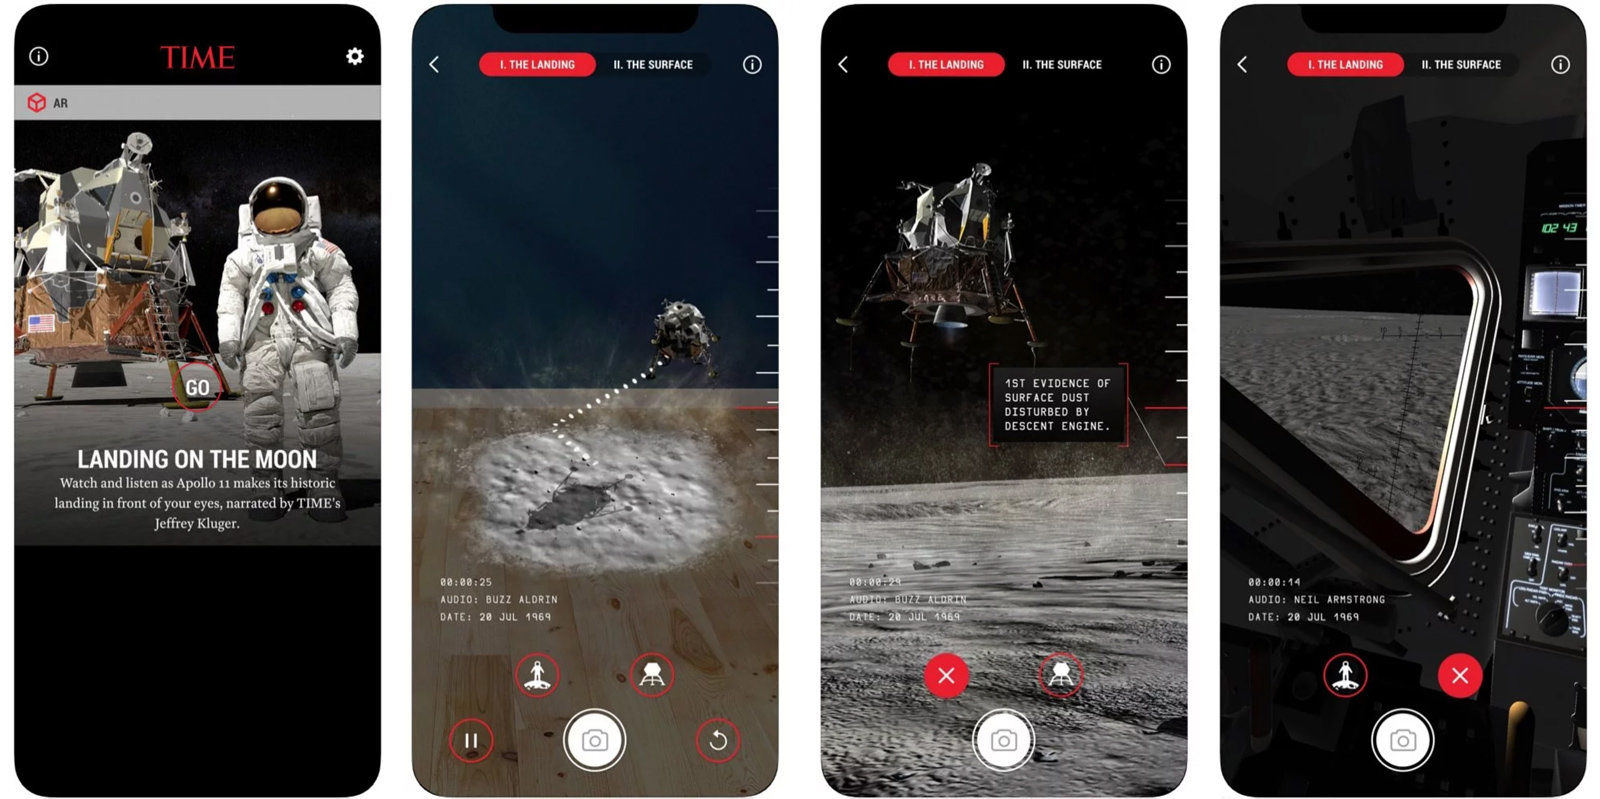 アポロ11号の月面着陸を追体験できるARアプリの操作画面